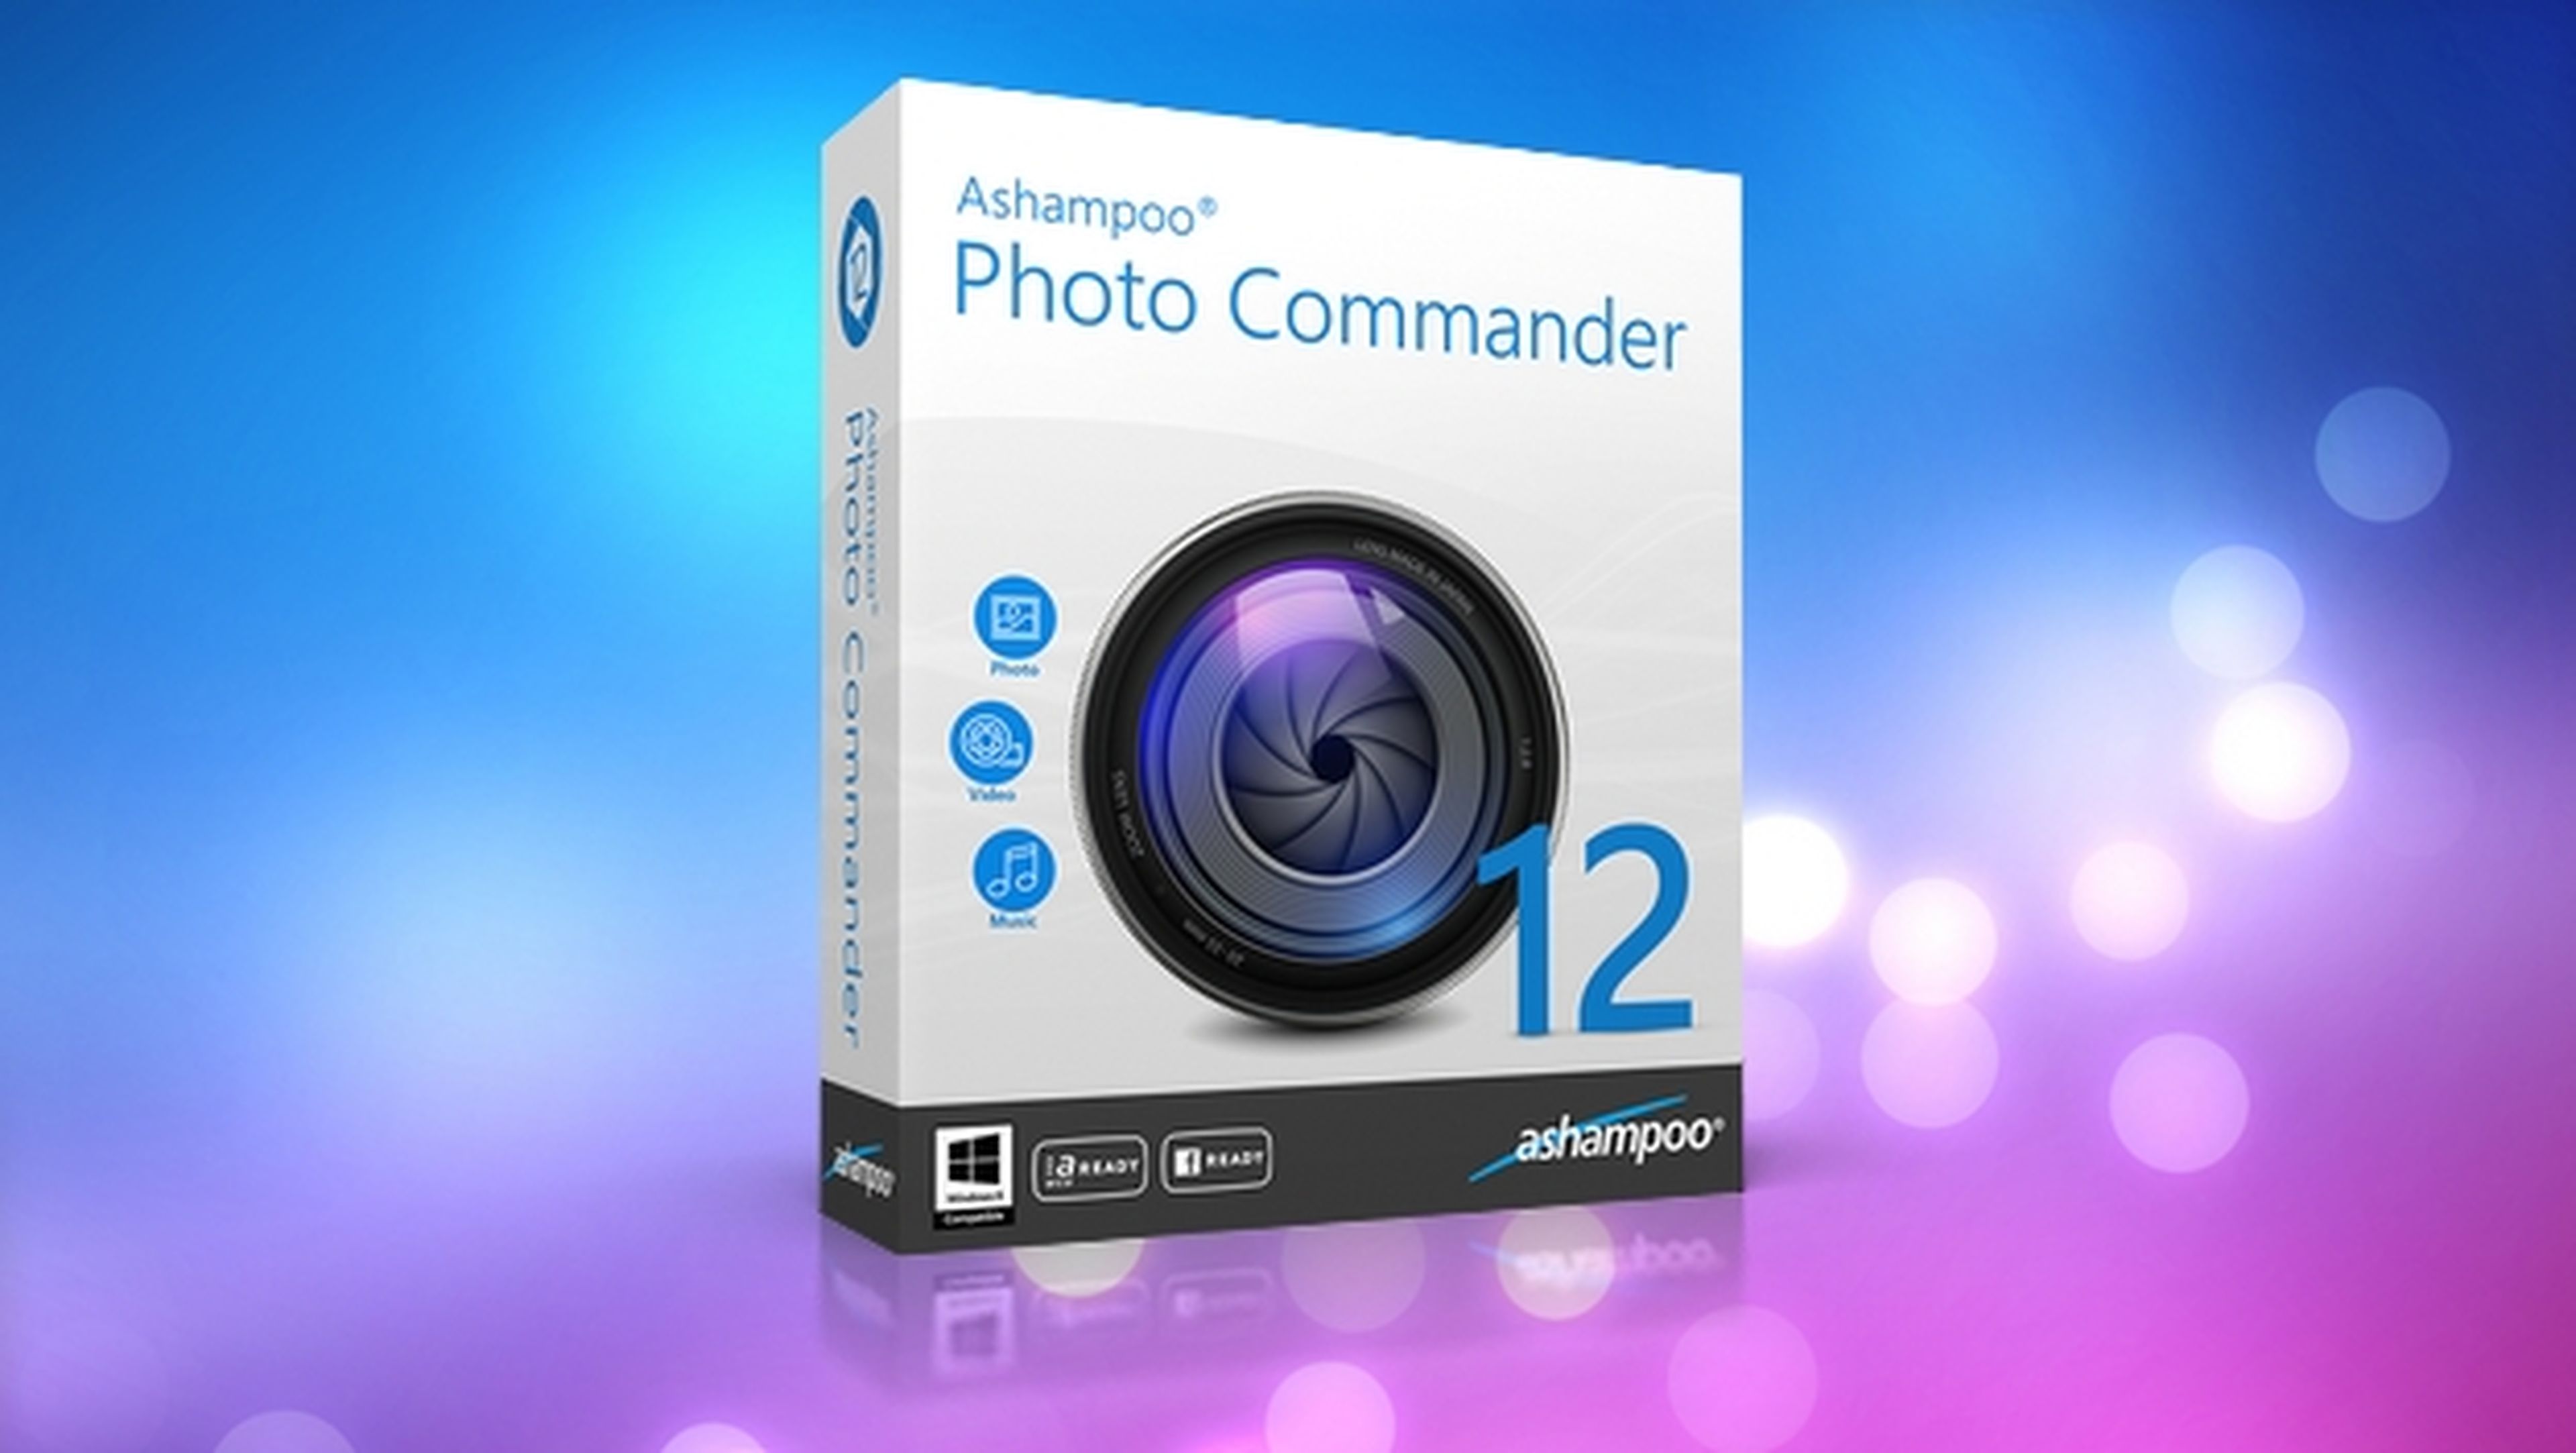 Ashampoo Photo Commander 12, el organizador de fotos más completo. Reserva antes del 13 de julio con un 40% de descuento.